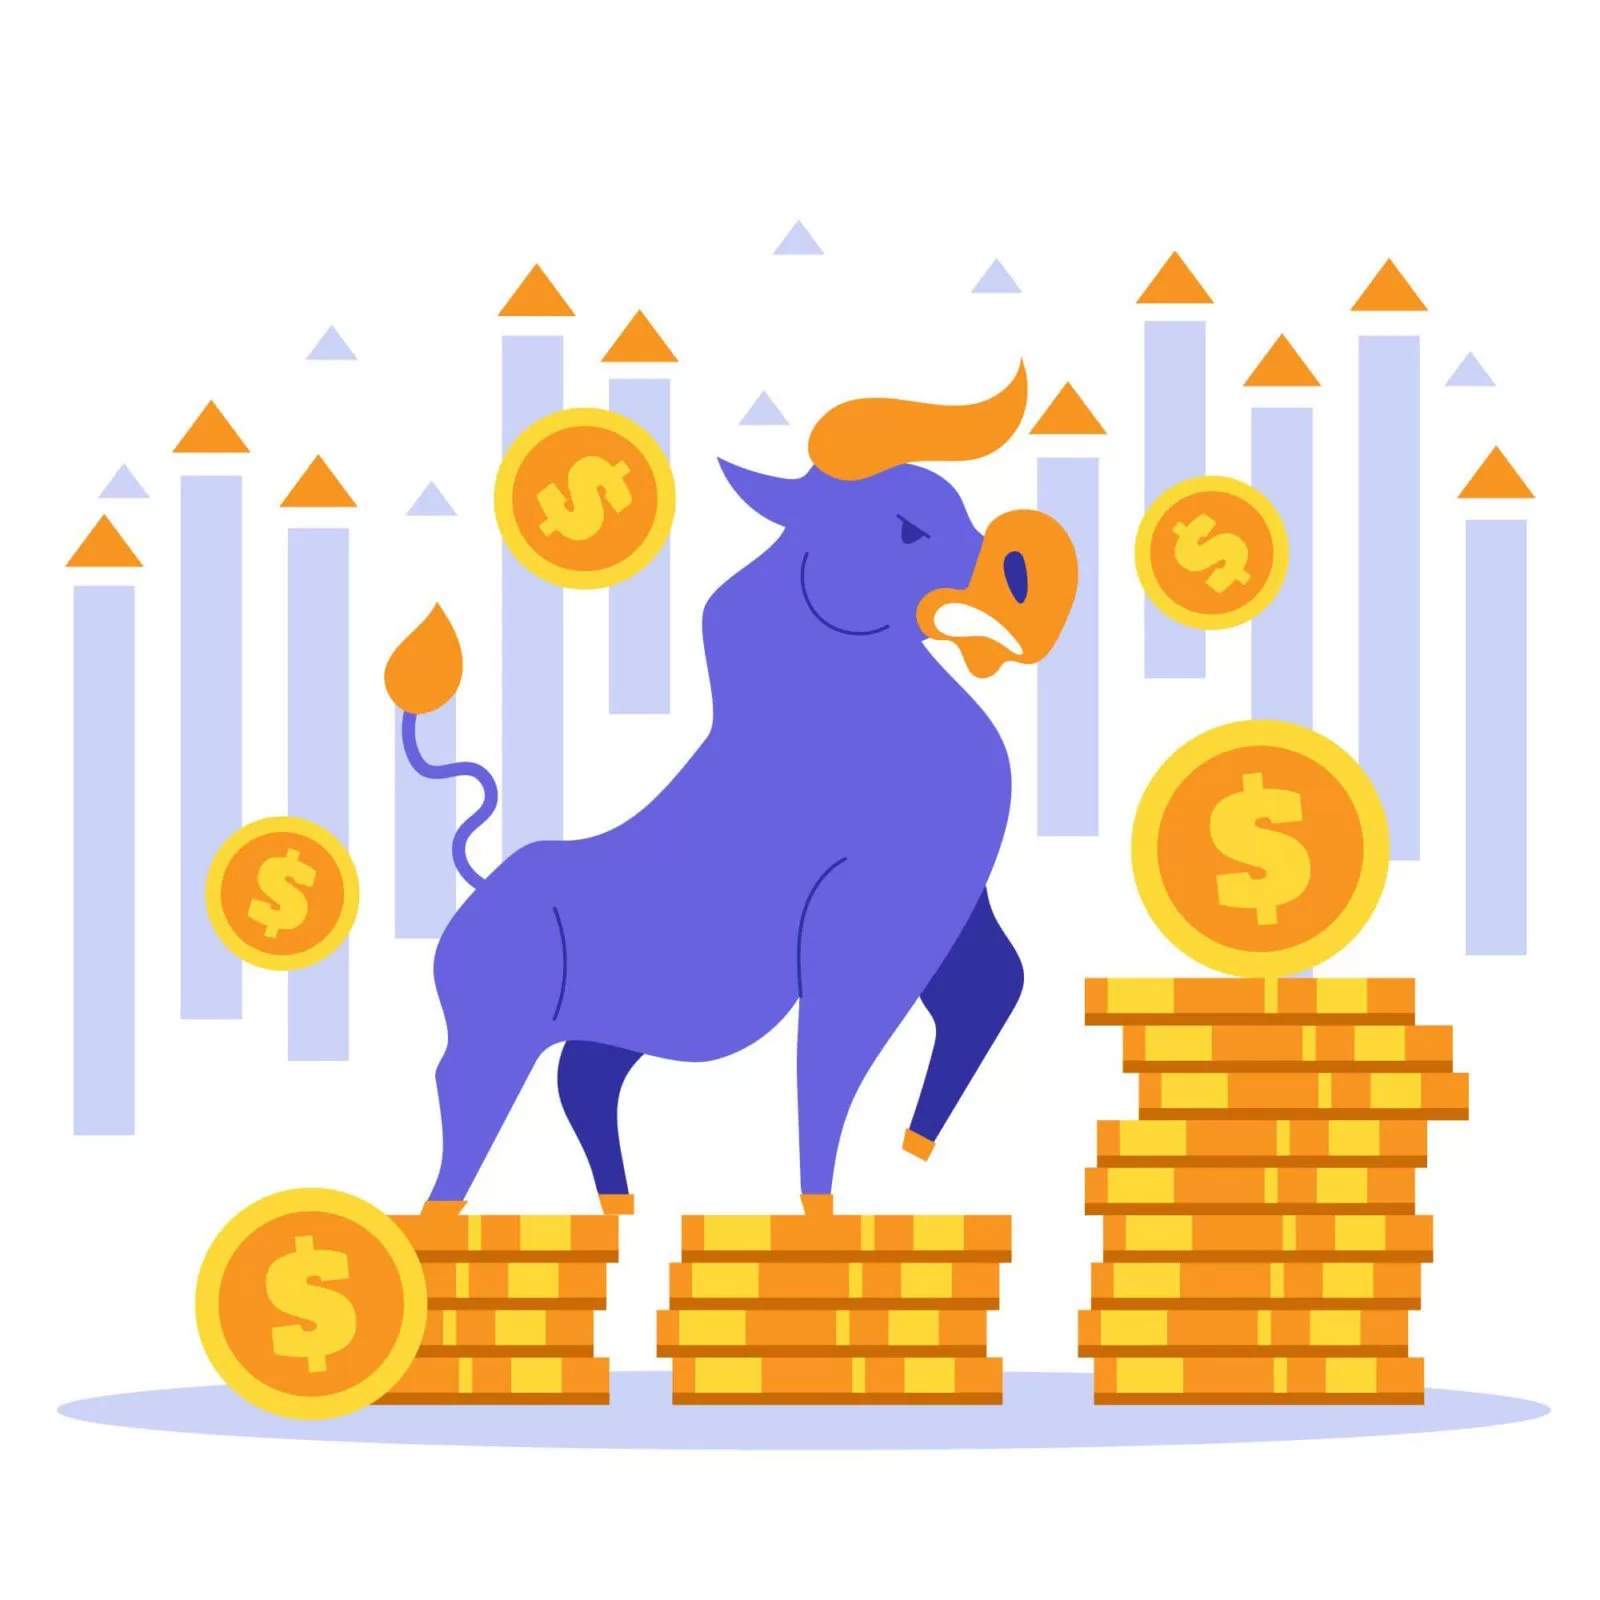 A bull on a coin-stock money